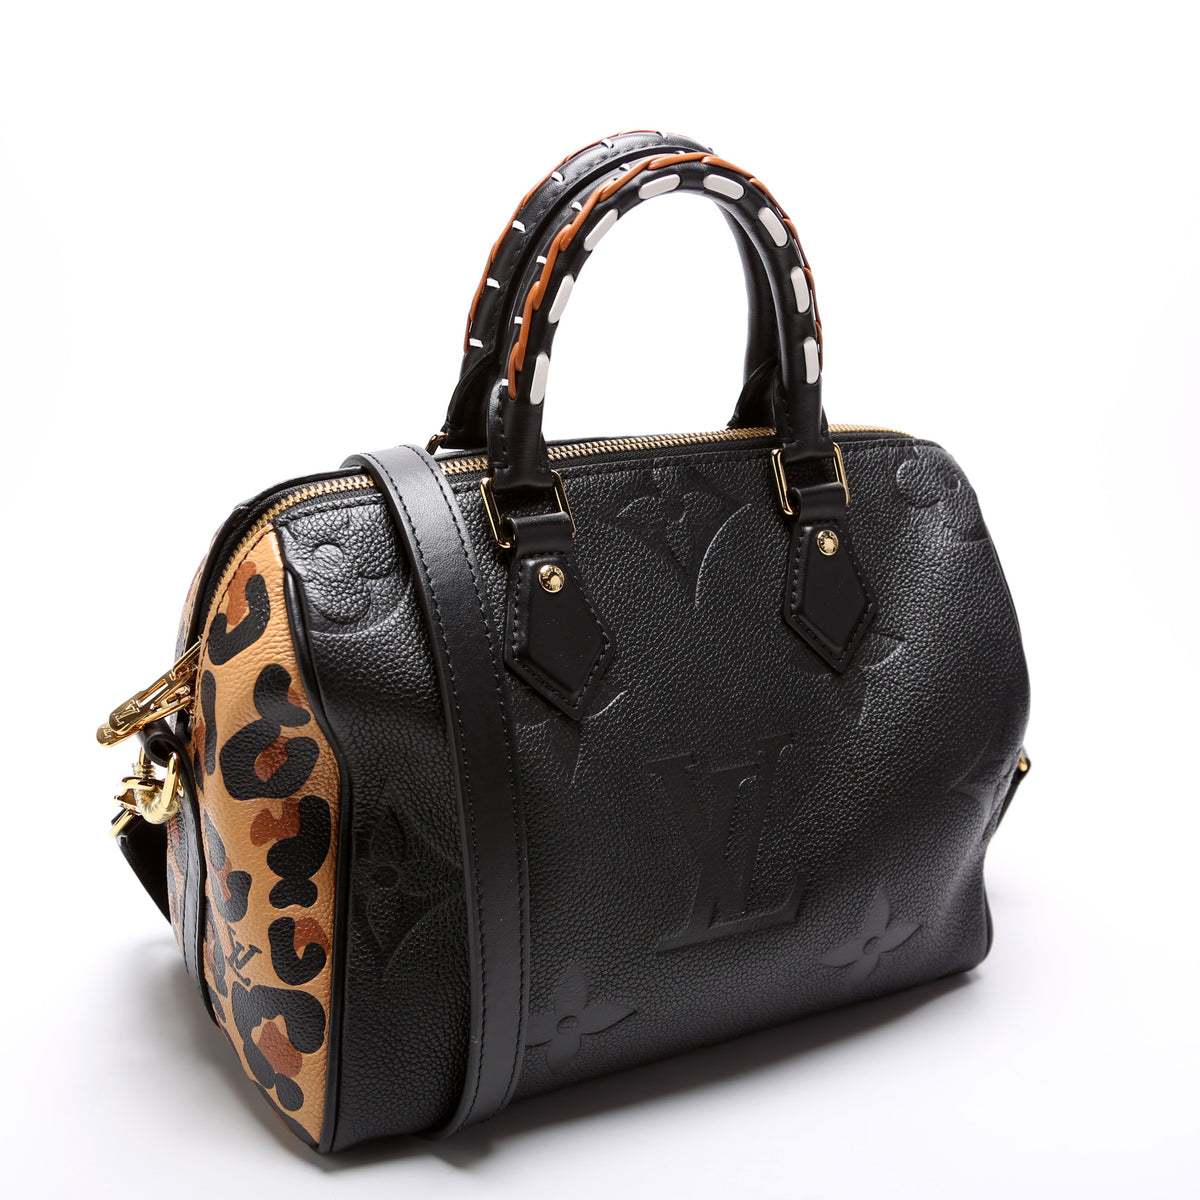 Speedy 25 Bandouliere Wild at Heart Empreinte – Keeks Designer Handbags